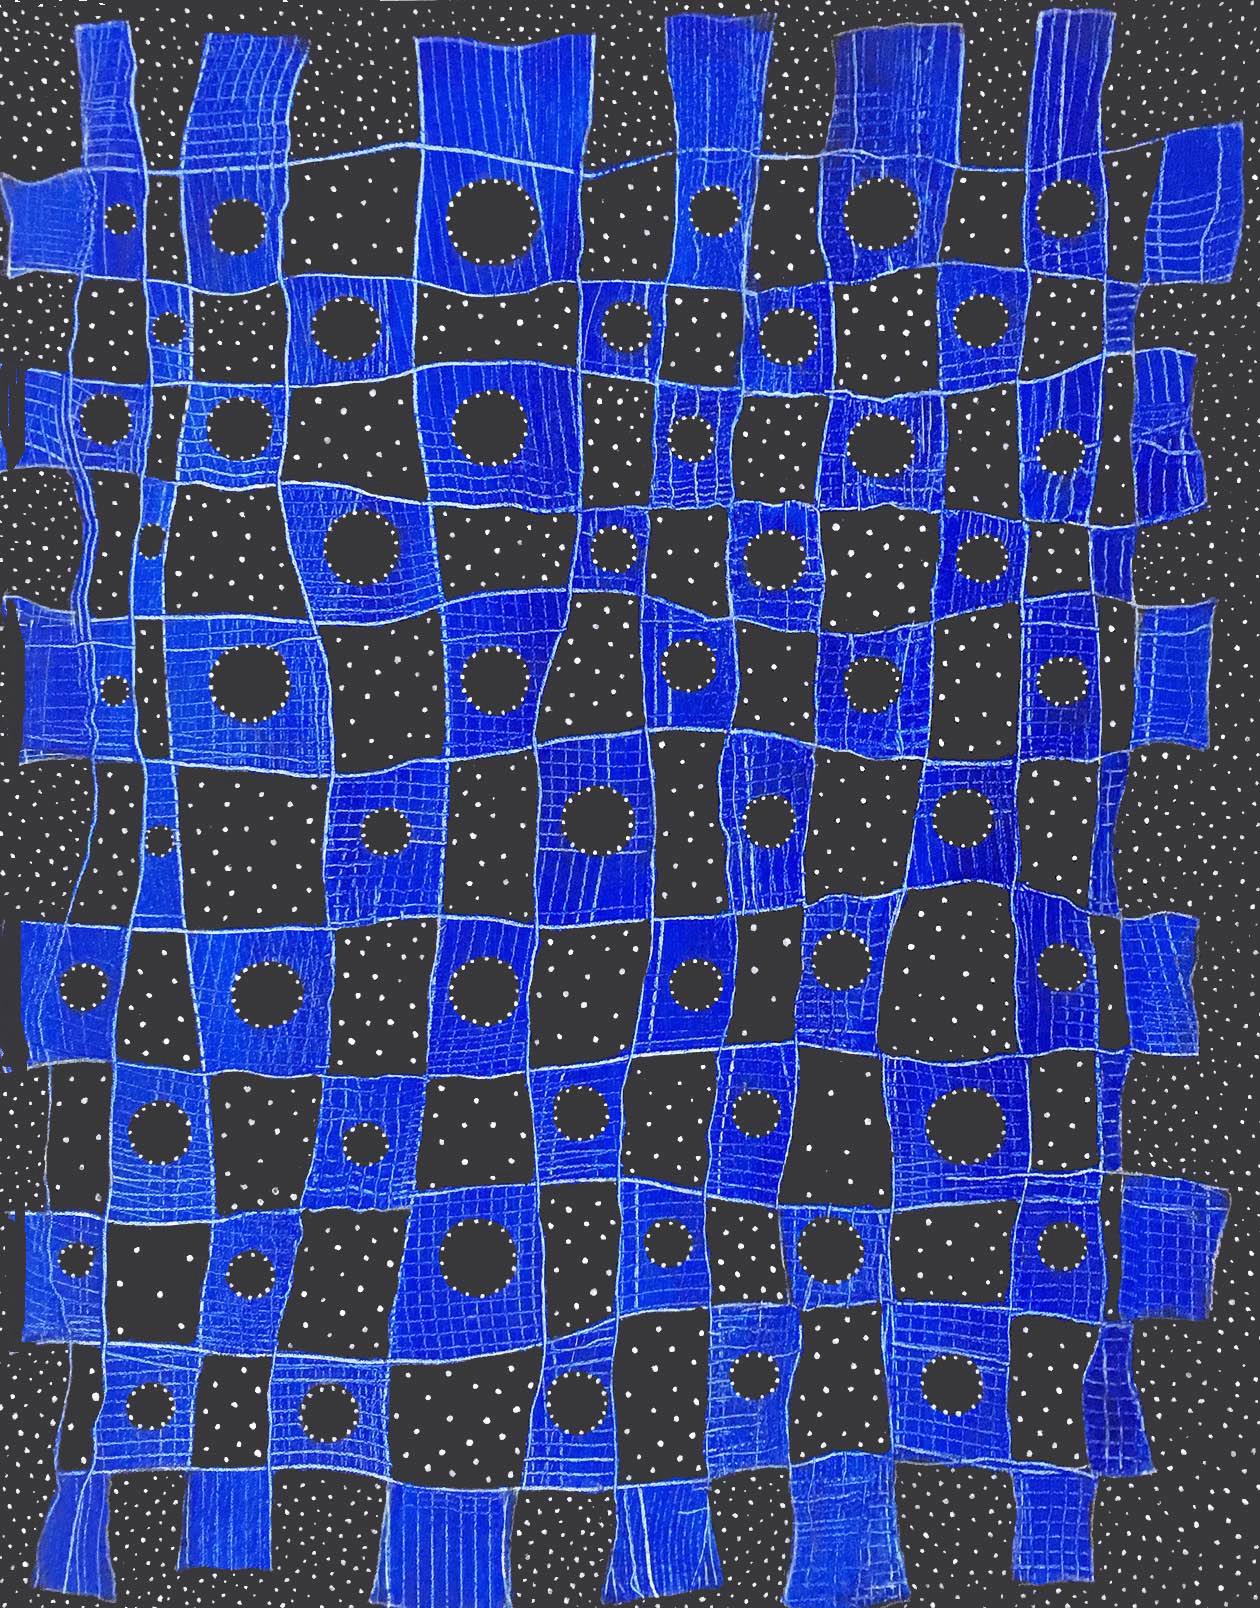 Le travail d'Andra Samelson explore la relation entre microcosme et macrocosme, vide et forme. L'imagerie de ses peintures est souvent associée à des systèmes moléculaires et galactiques. Rendant les formes de l'intérieur, ses lignes migrantes en